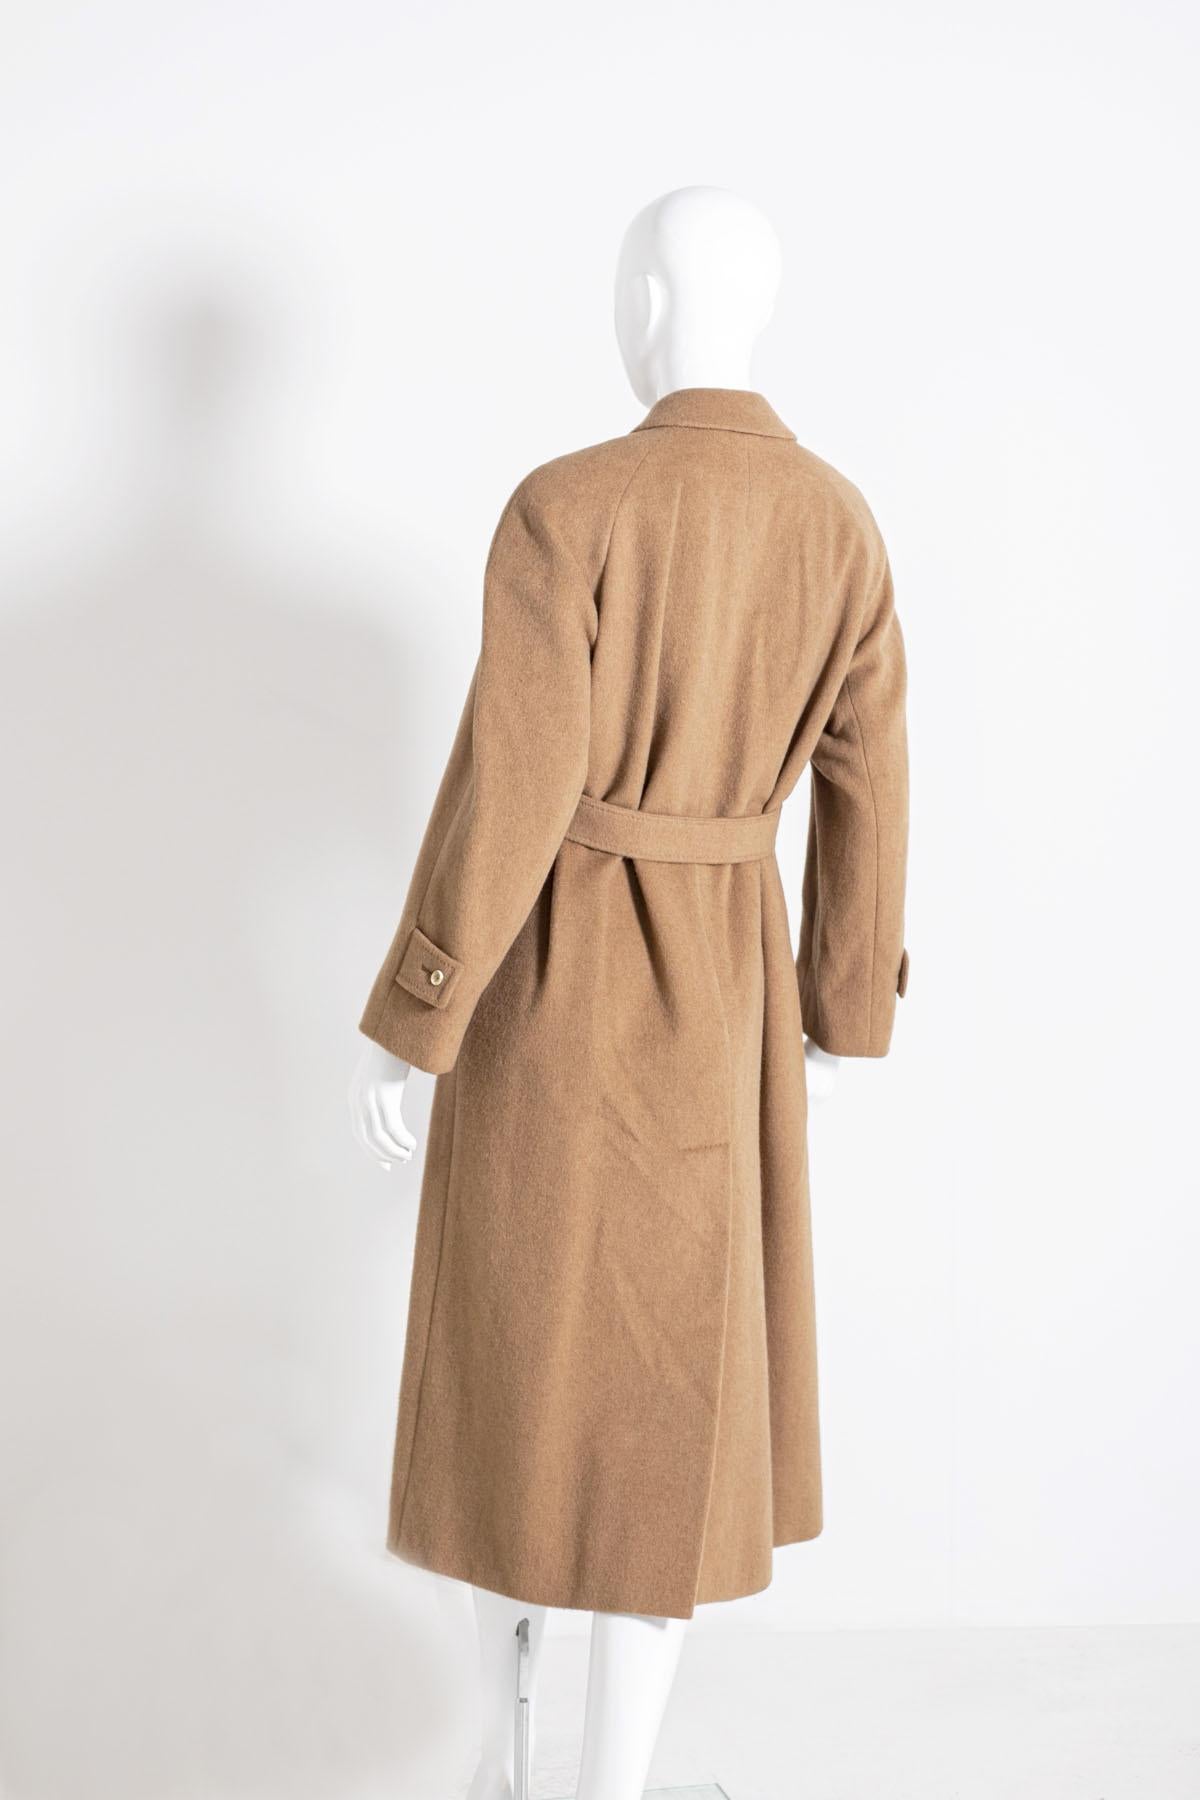 Manteau Aquascutum pour femme des années 90, couleur camel, fait de 100% pur Cachemire. 
Ligne classique, avec cinq boutons sur le devant et deux poches confortables, longueur cheville avec ceinture assortie réglable. L'intérieur est doublé en 100%